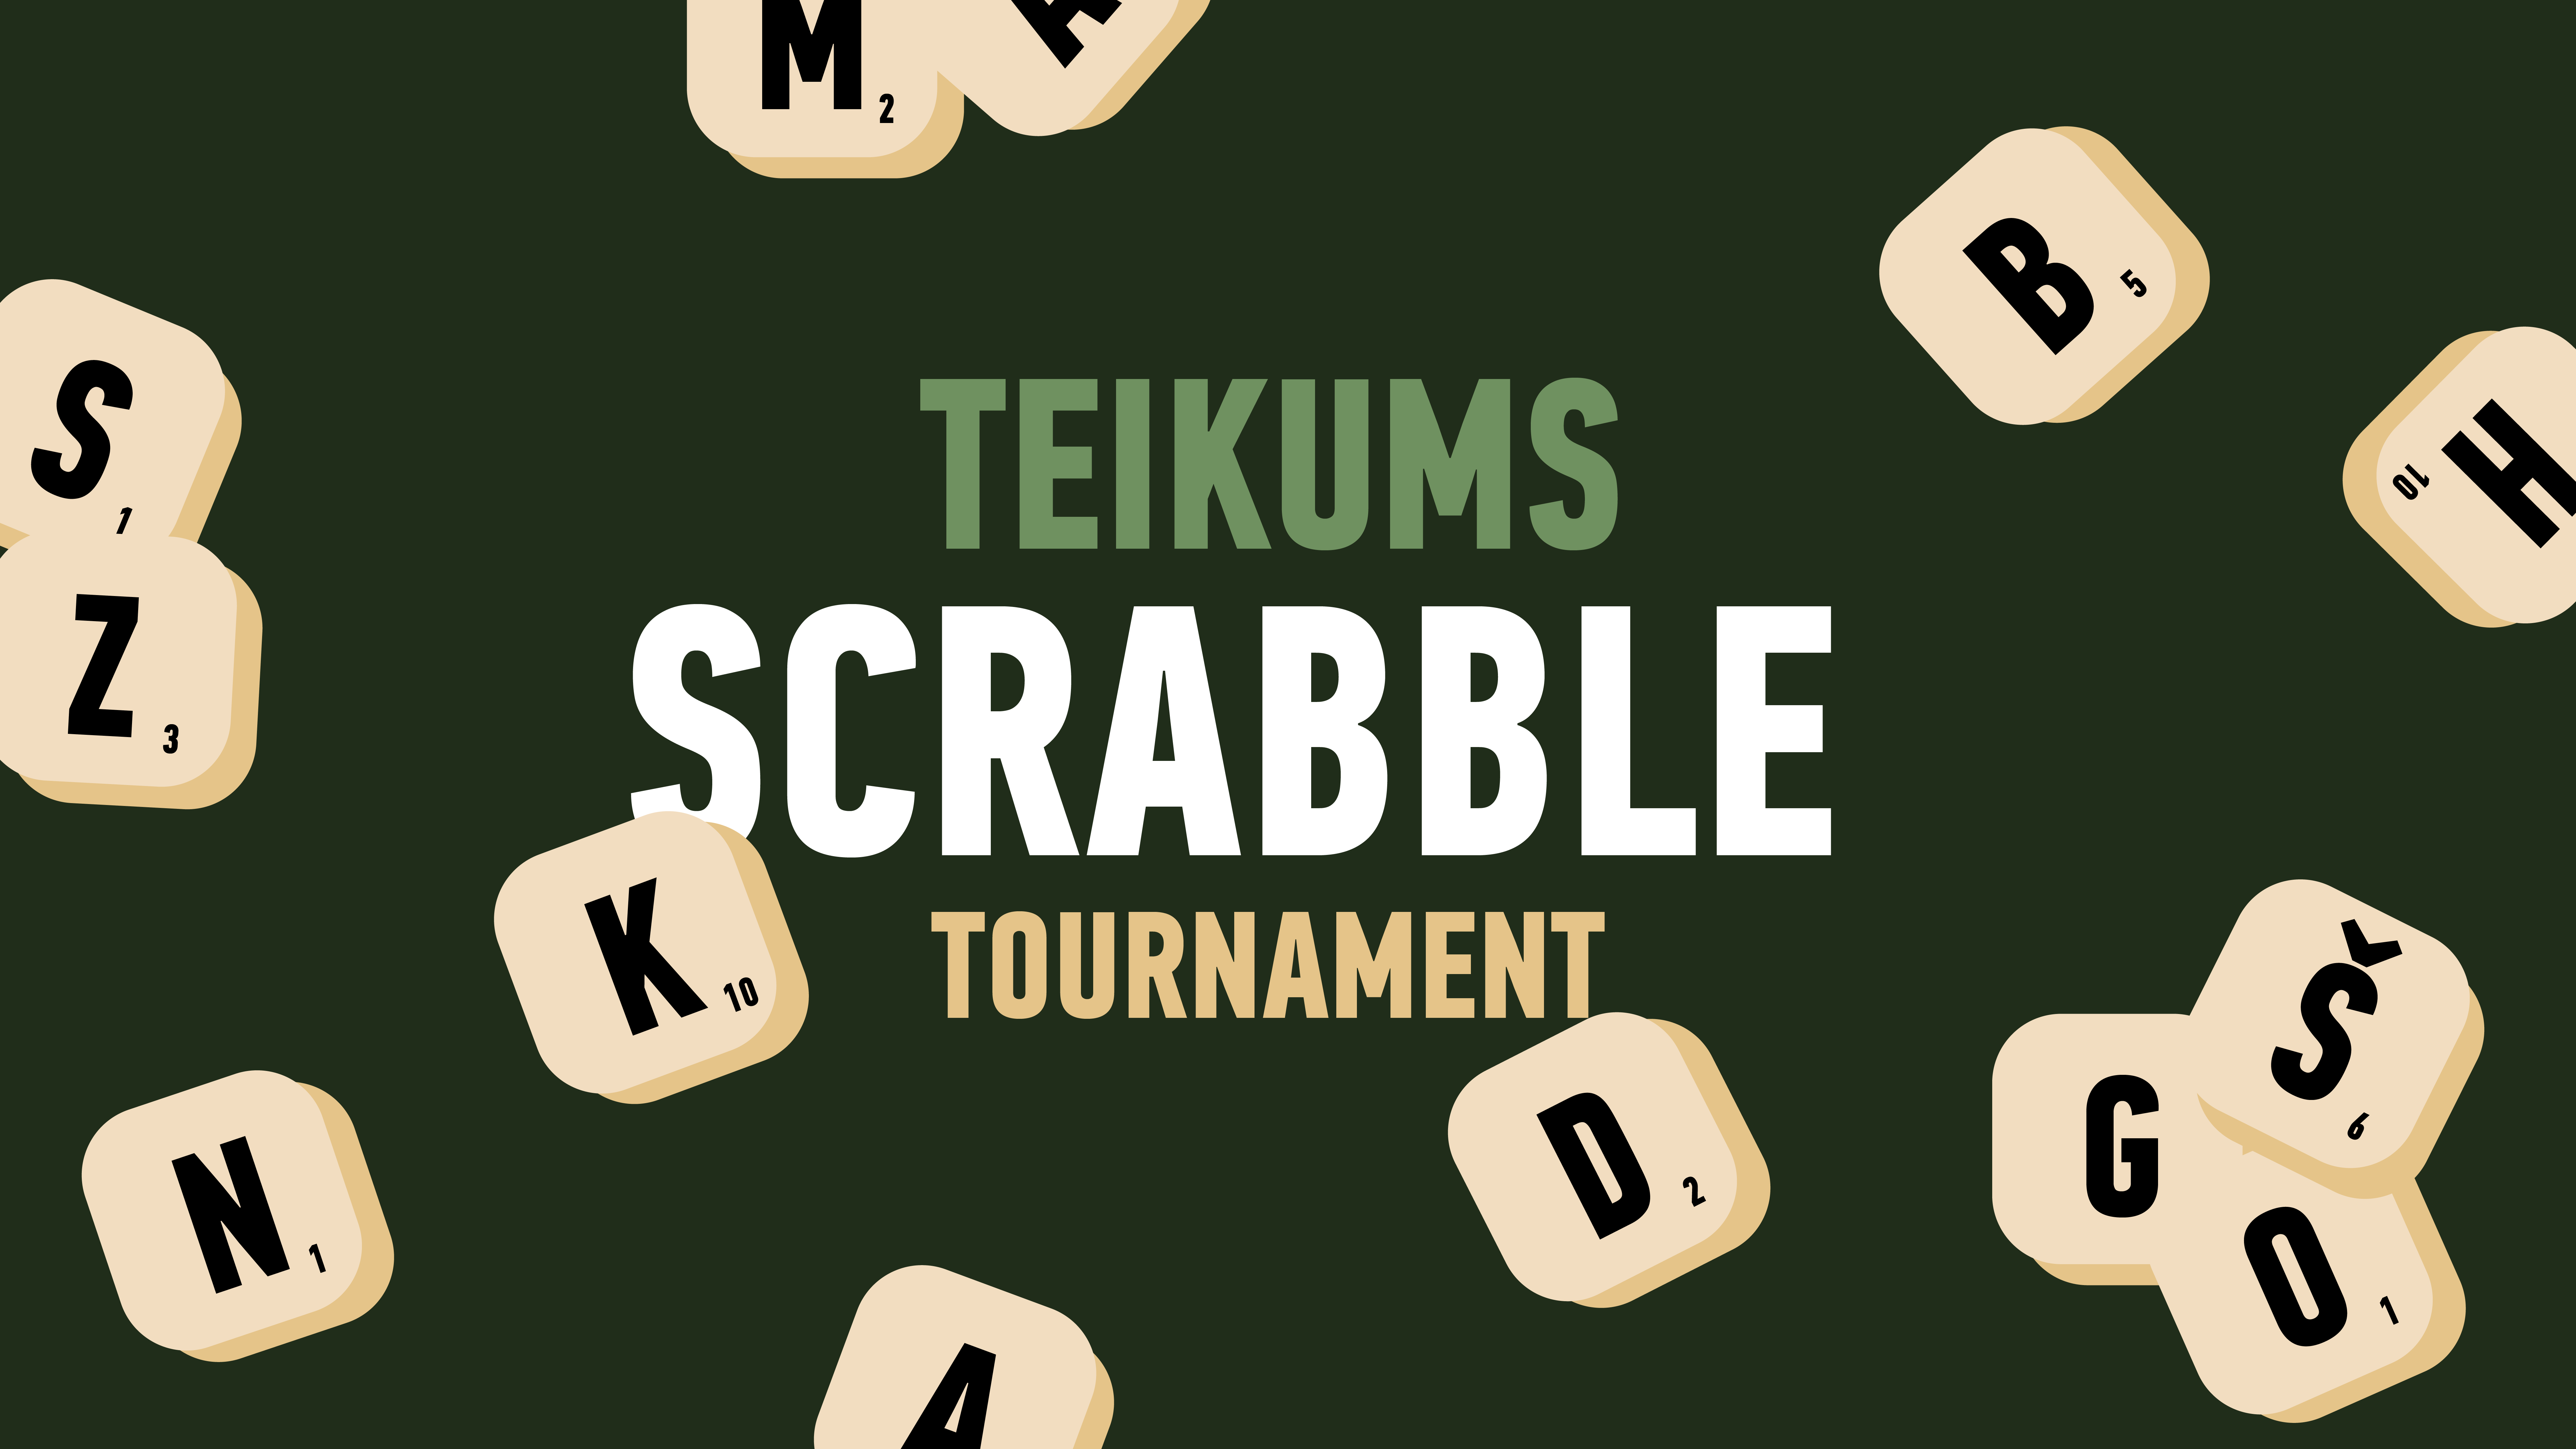 Teikums Scrabble Tournament